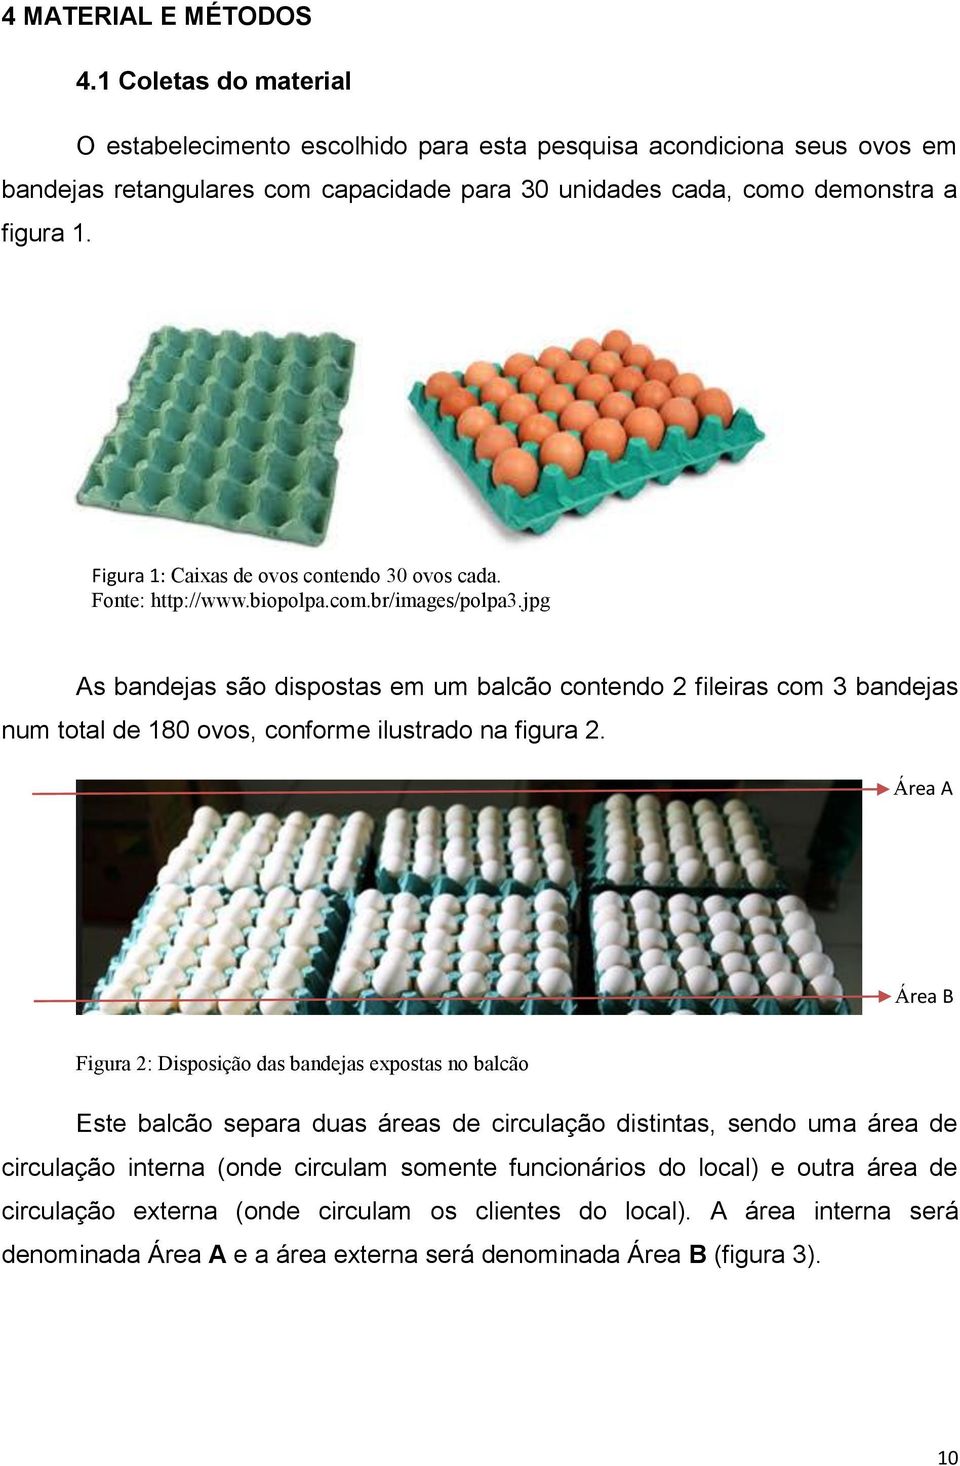 Figura 1: Caixas de ovos contendo 30 ovos cada. Fonte: http://www.biopolpa.com.br/images/polpa3.